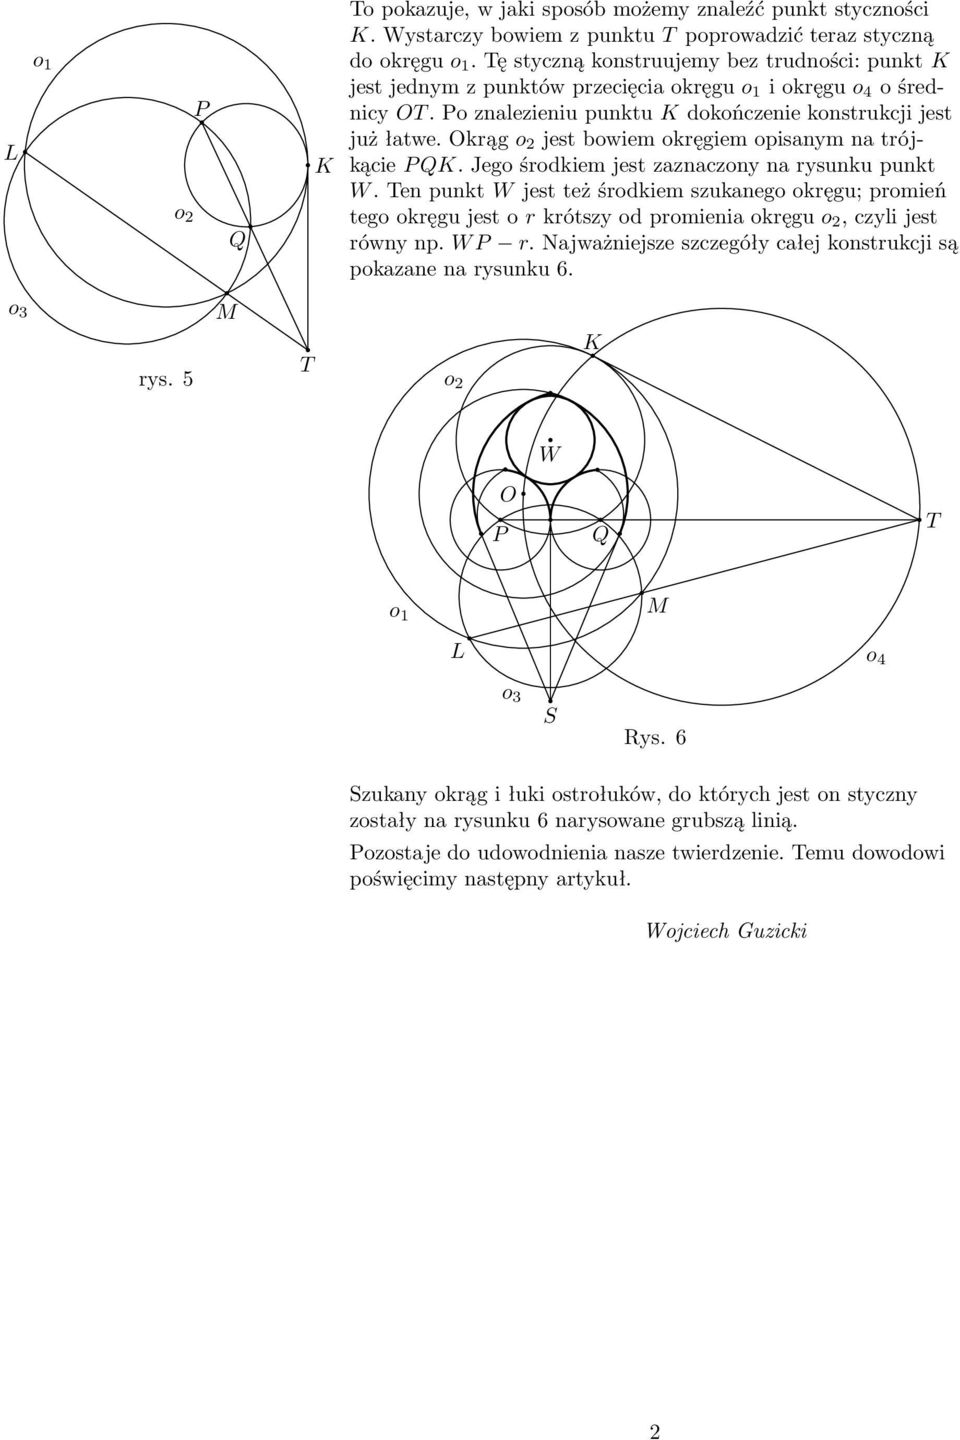 krągo jestbowiemokręgiemopisanymnatrójkącie K. Jego środkiem jest zaznaczony na rysunku punkt W.